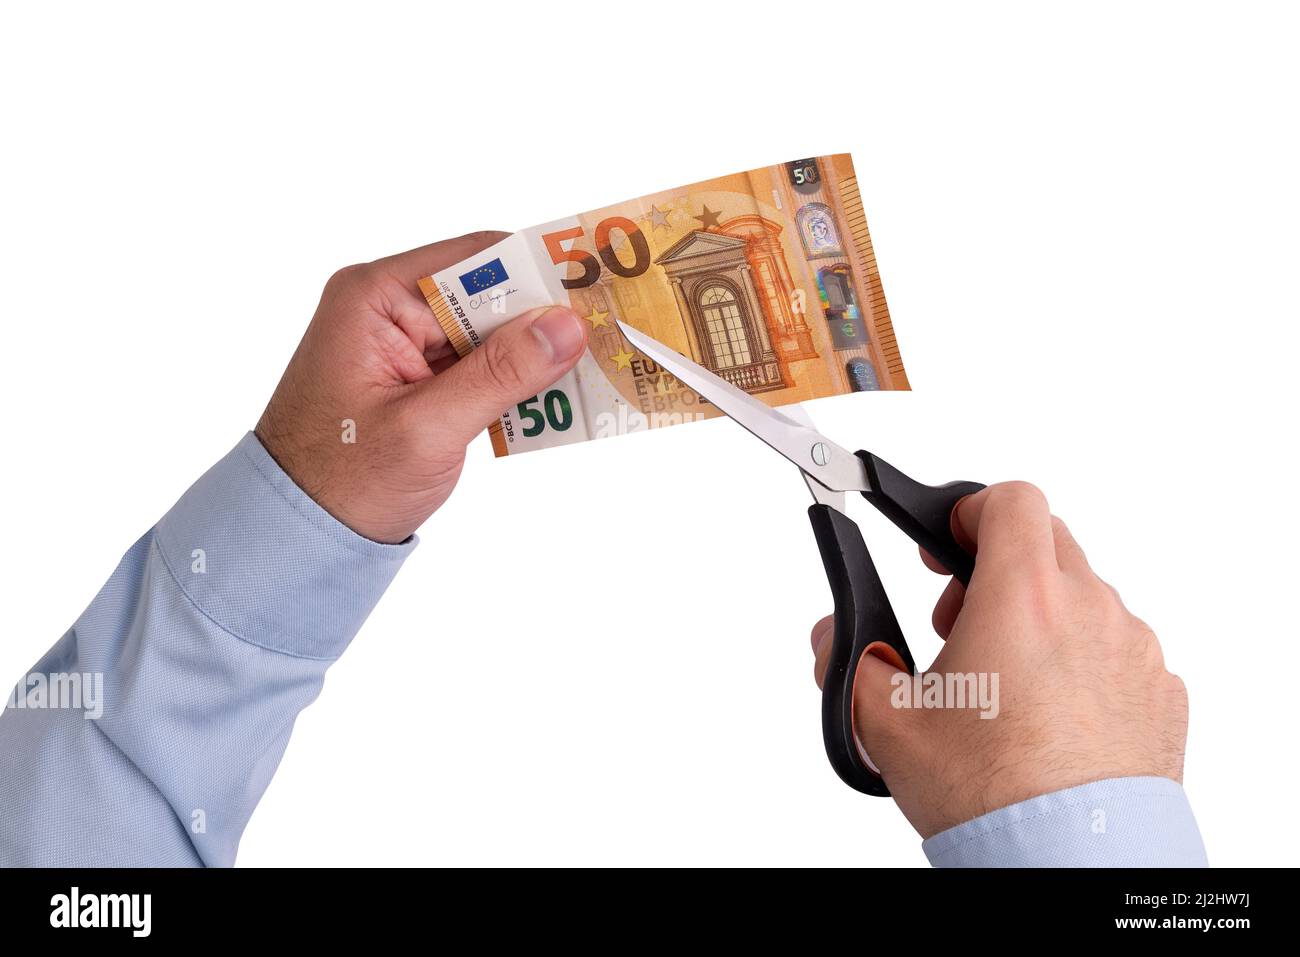 Uomo che taglia una fattura di 50 euro con un paio di forbici. Inflazione e perdita di valore del denaro Foto Stock